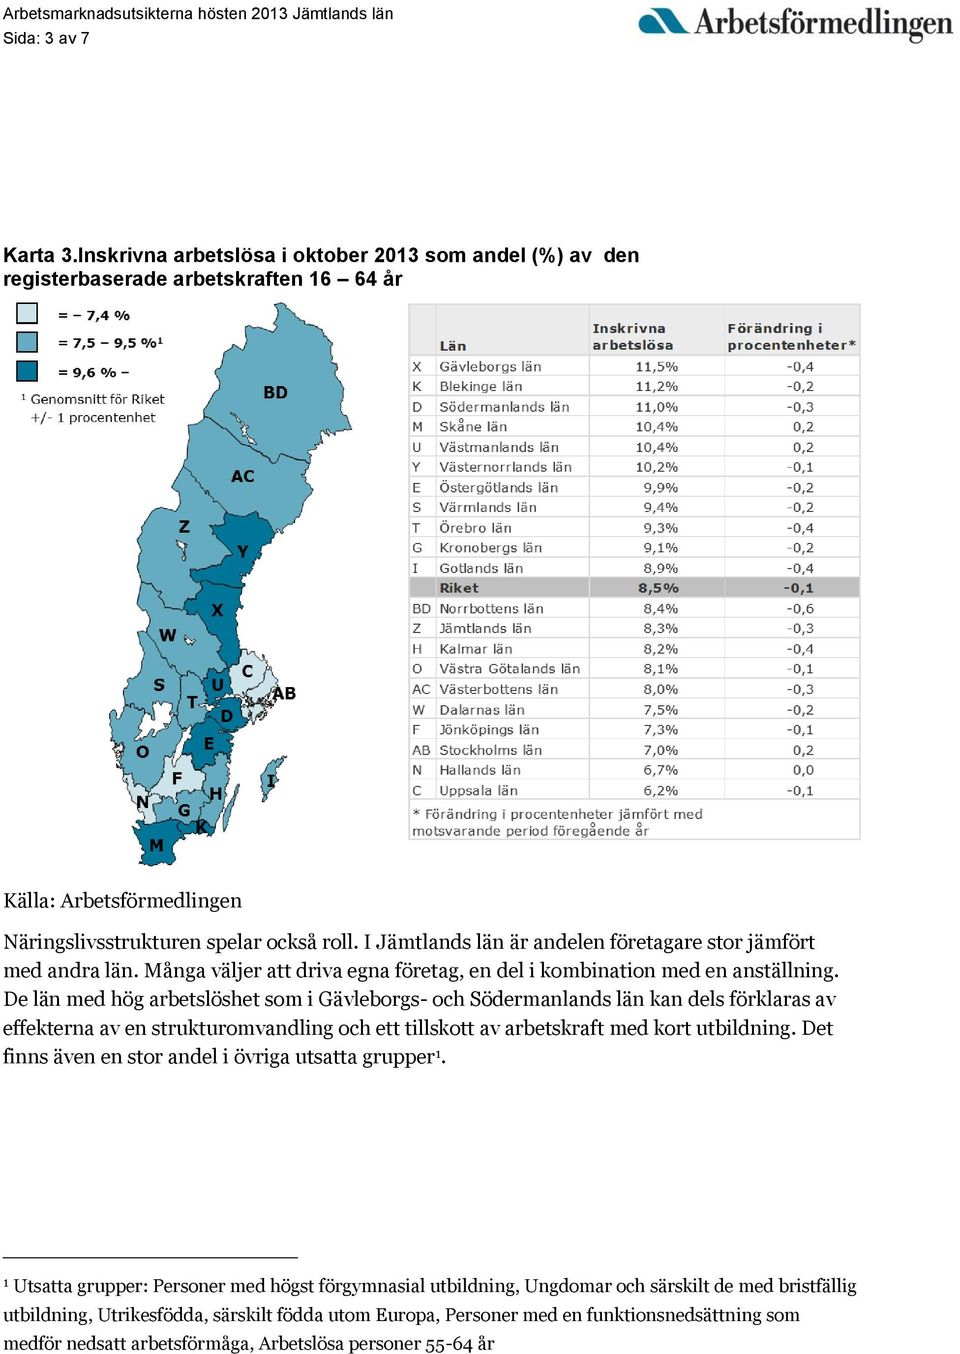 De län med hög arbetslöshet som i Gävleborgs- och Södermanlands län kan dels förklaras av effekterna av en strukturomvandling och ett tillskott av arbetskraft med kort utbildning.